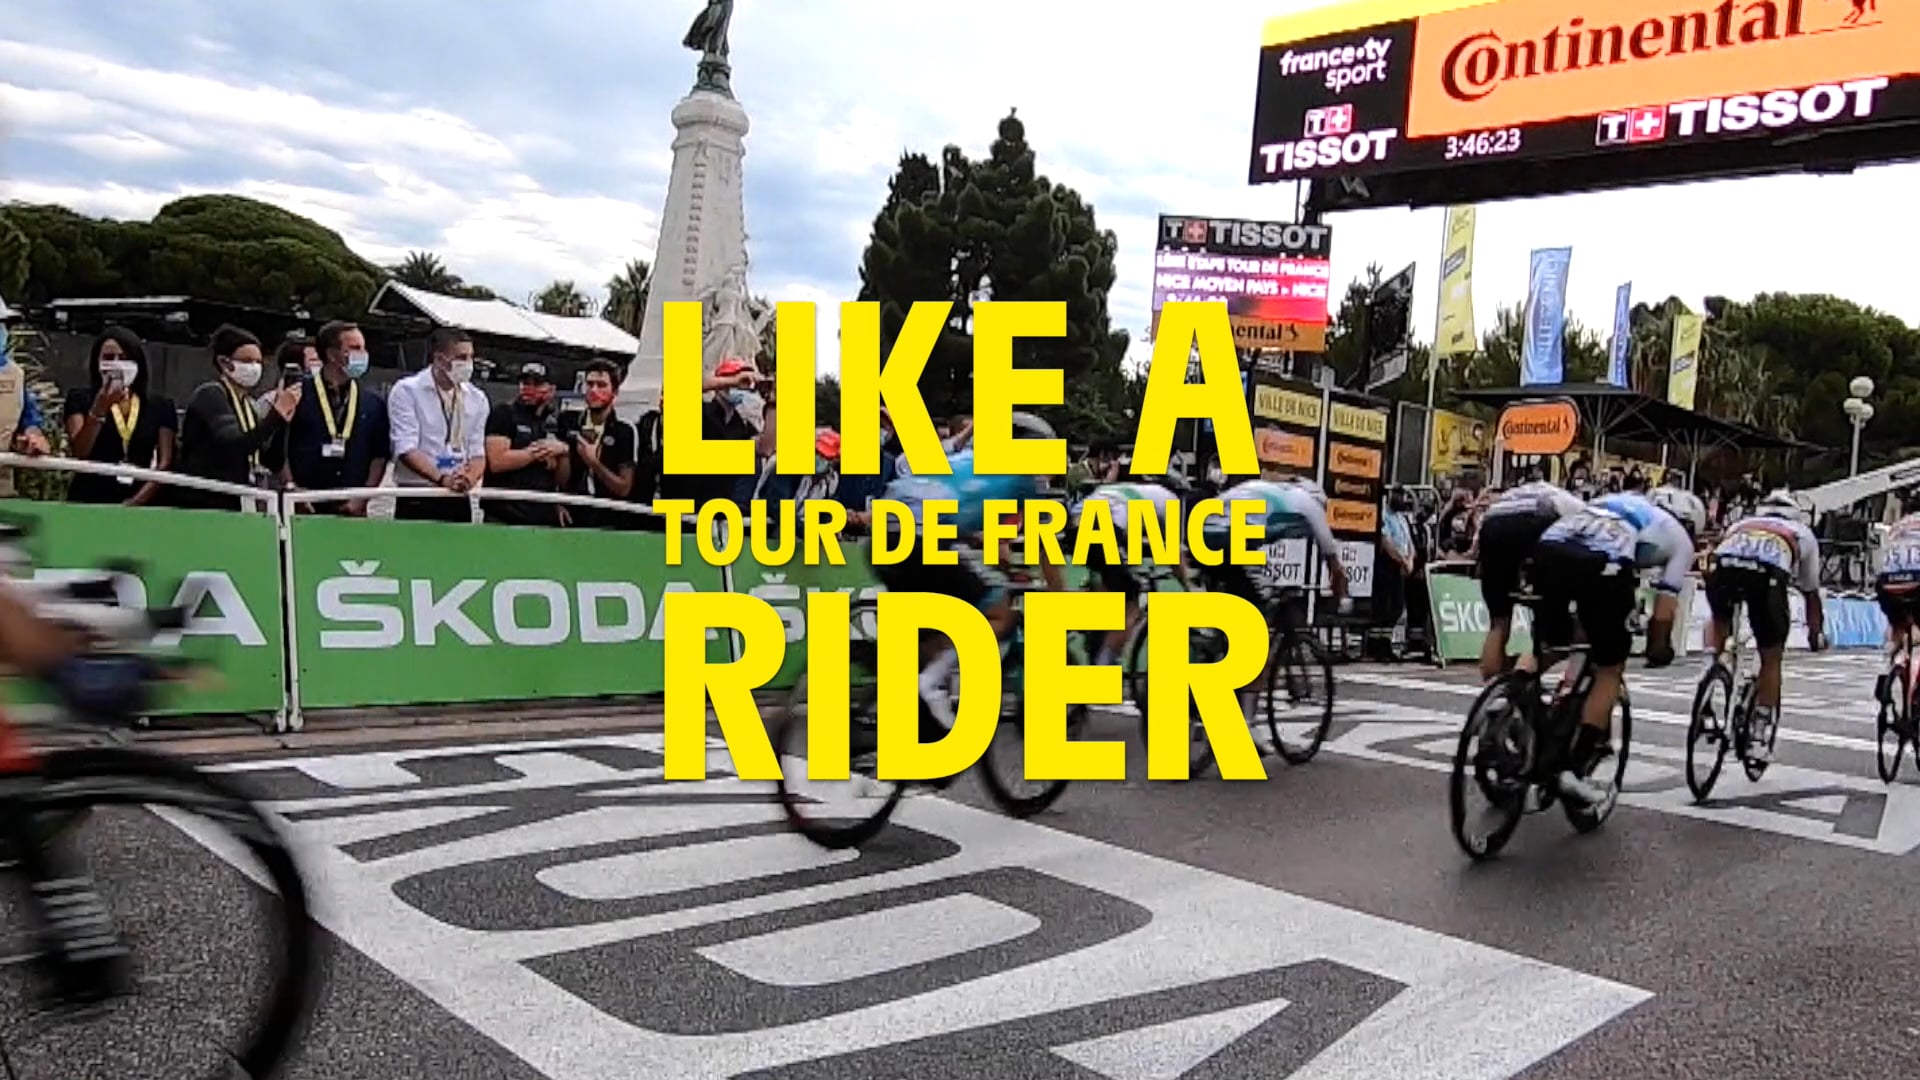 Vidéo PUB Voix off en anglais - Tour de France